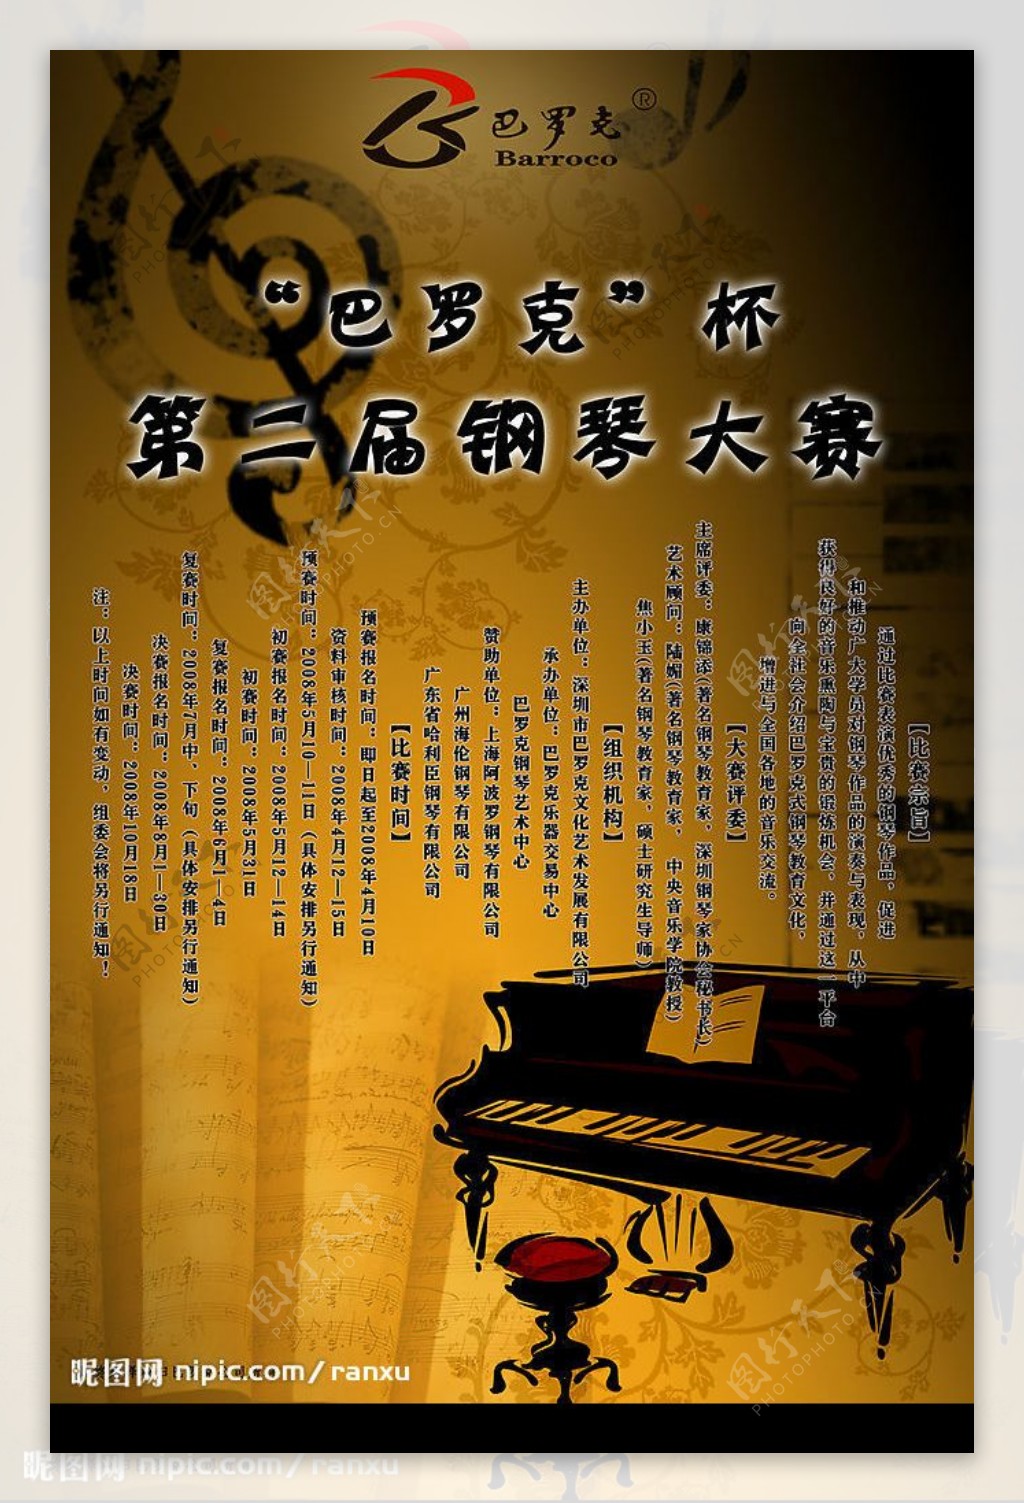 巴罗克杯钢琴大赛海报图片